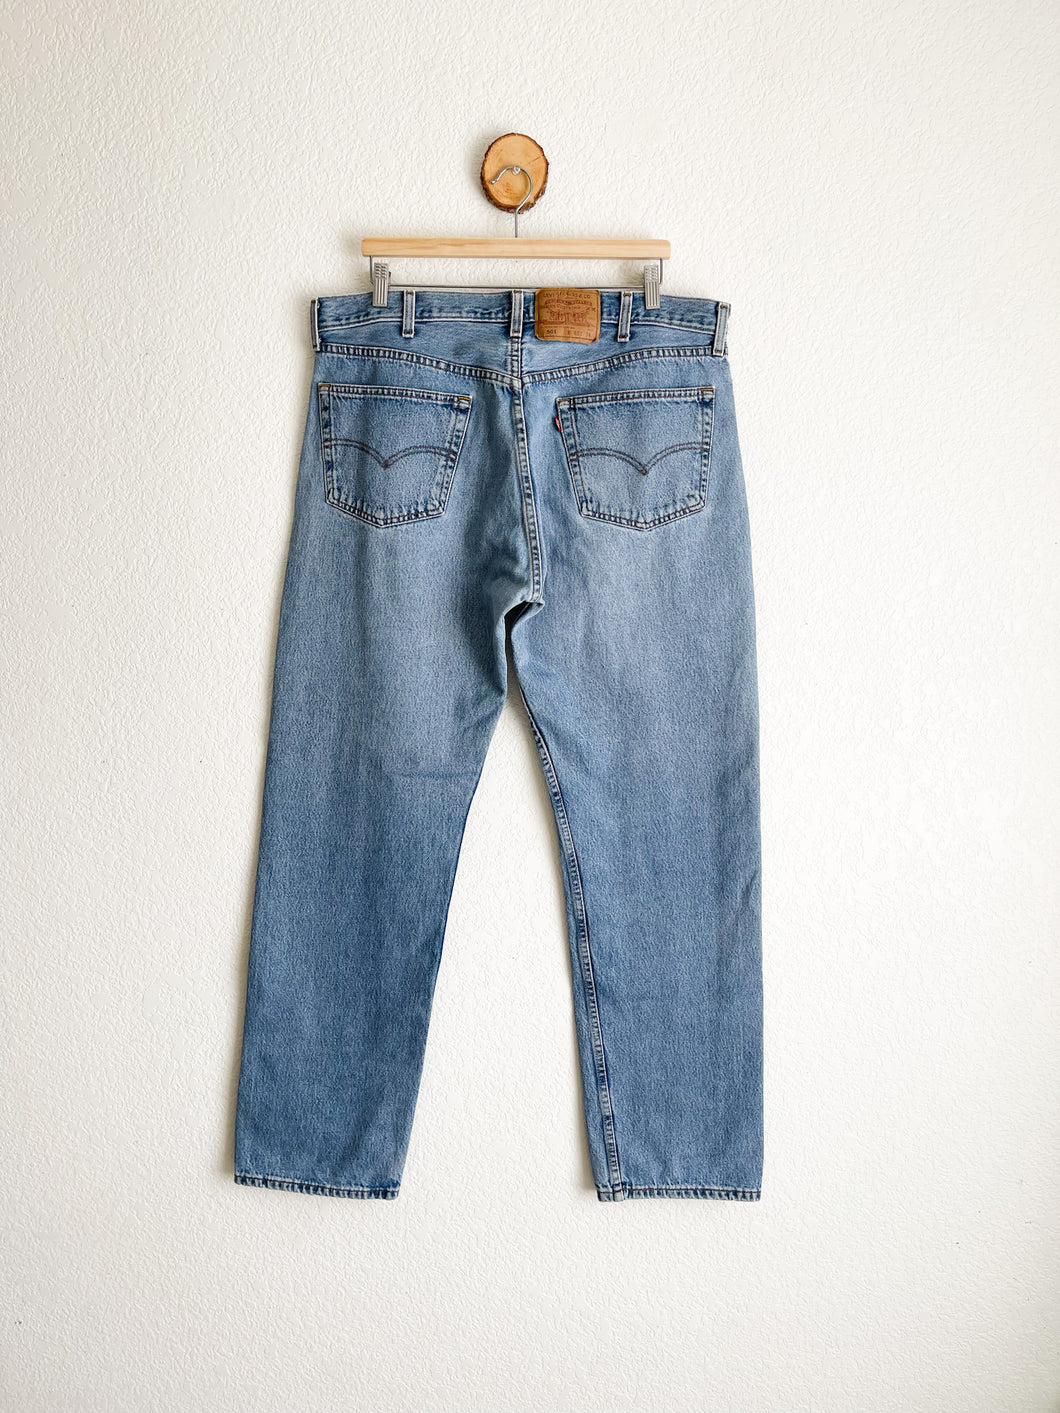 Vintage Levi's 501 Jeans - 39